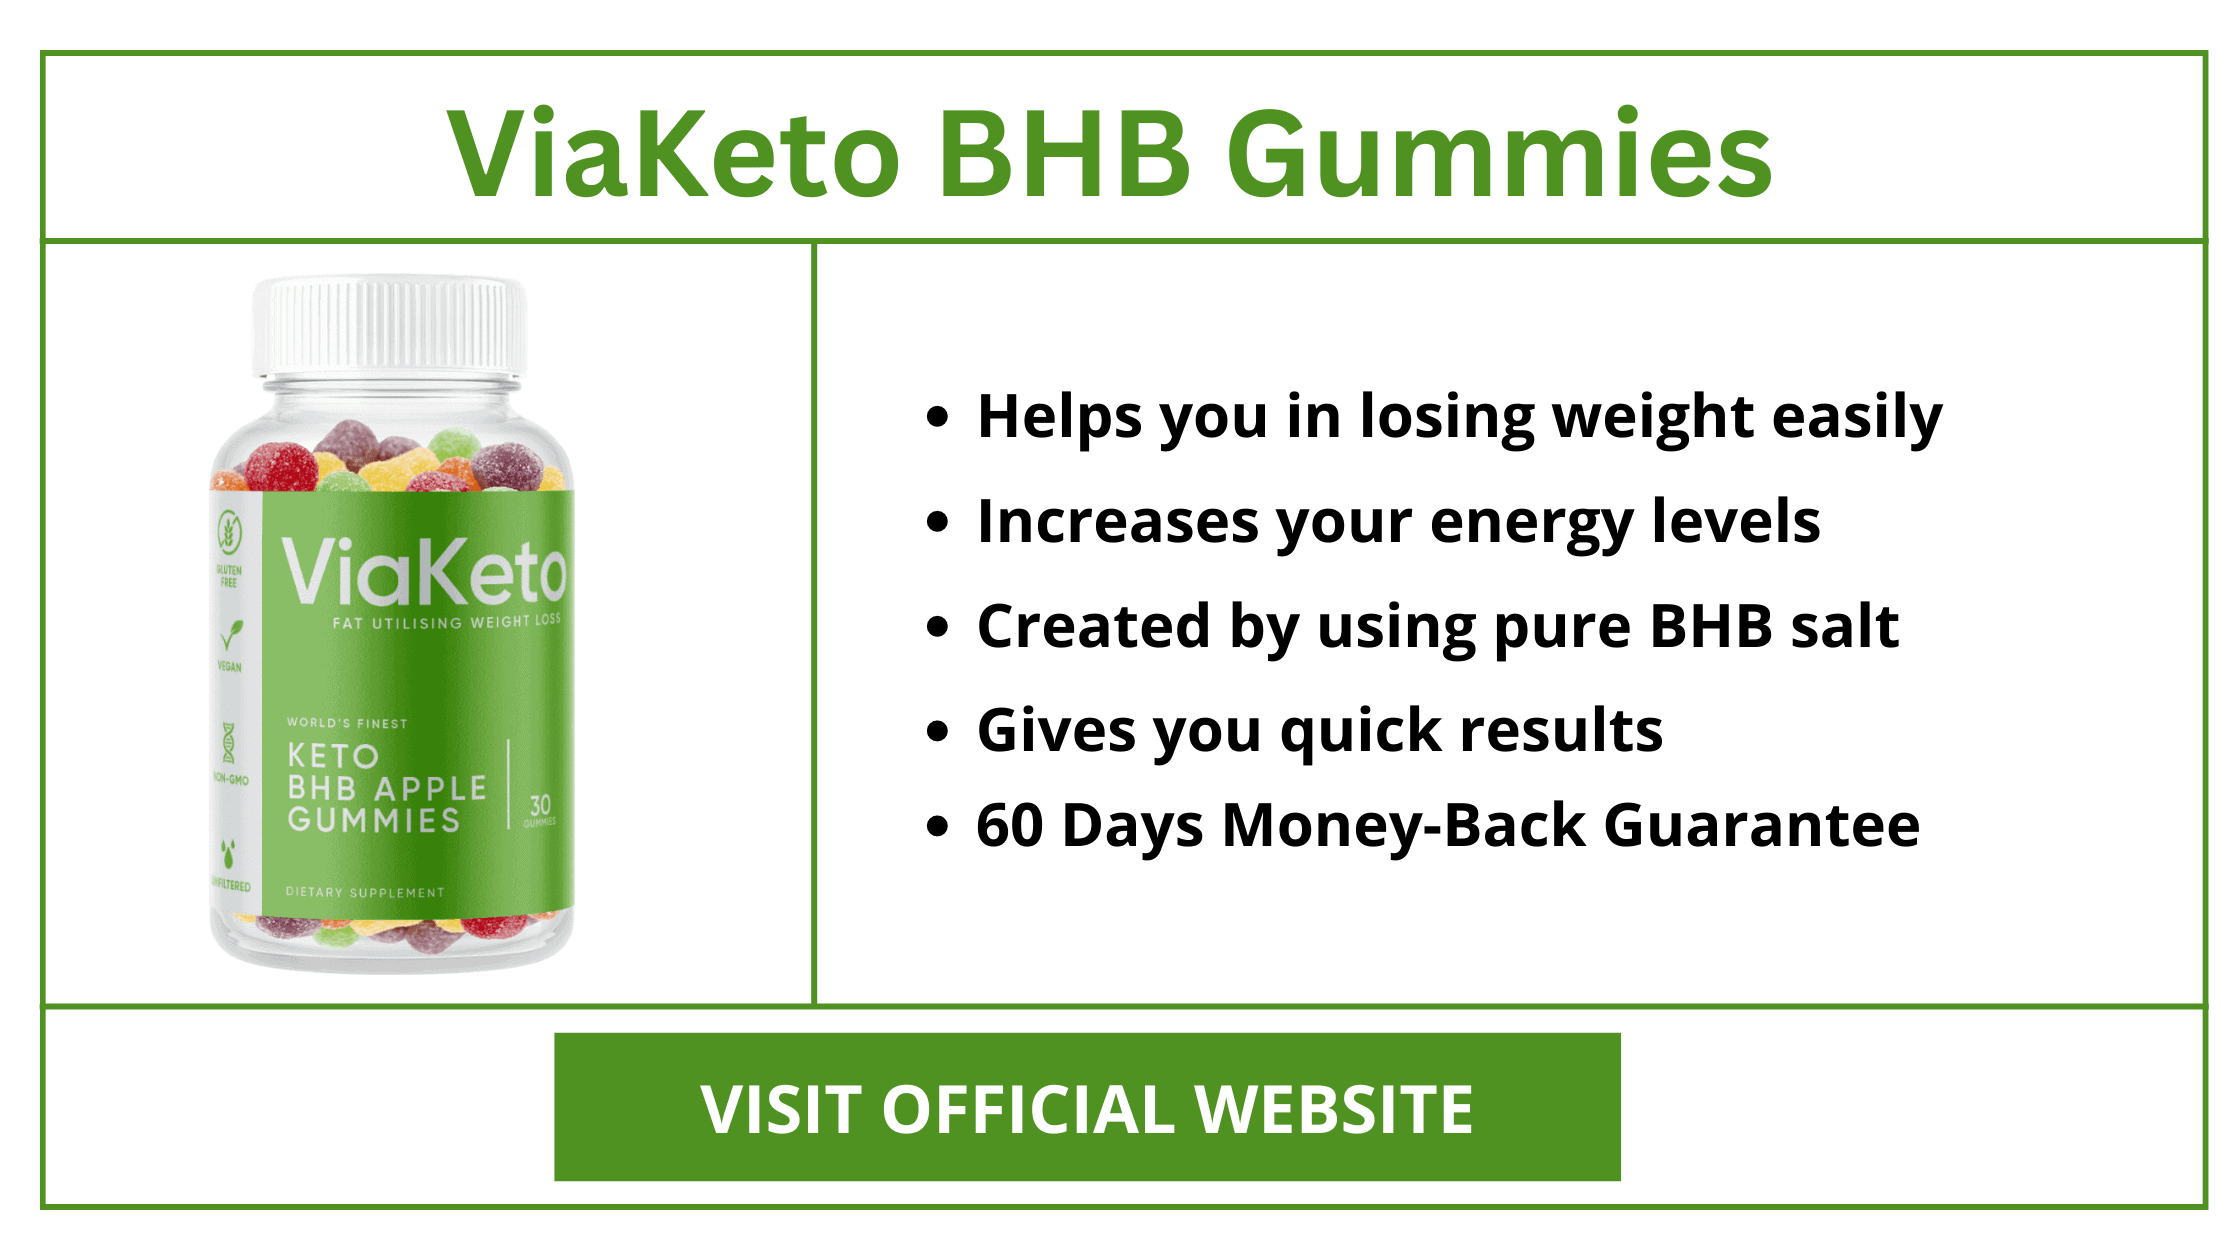 ViaKeto BHB Gummies